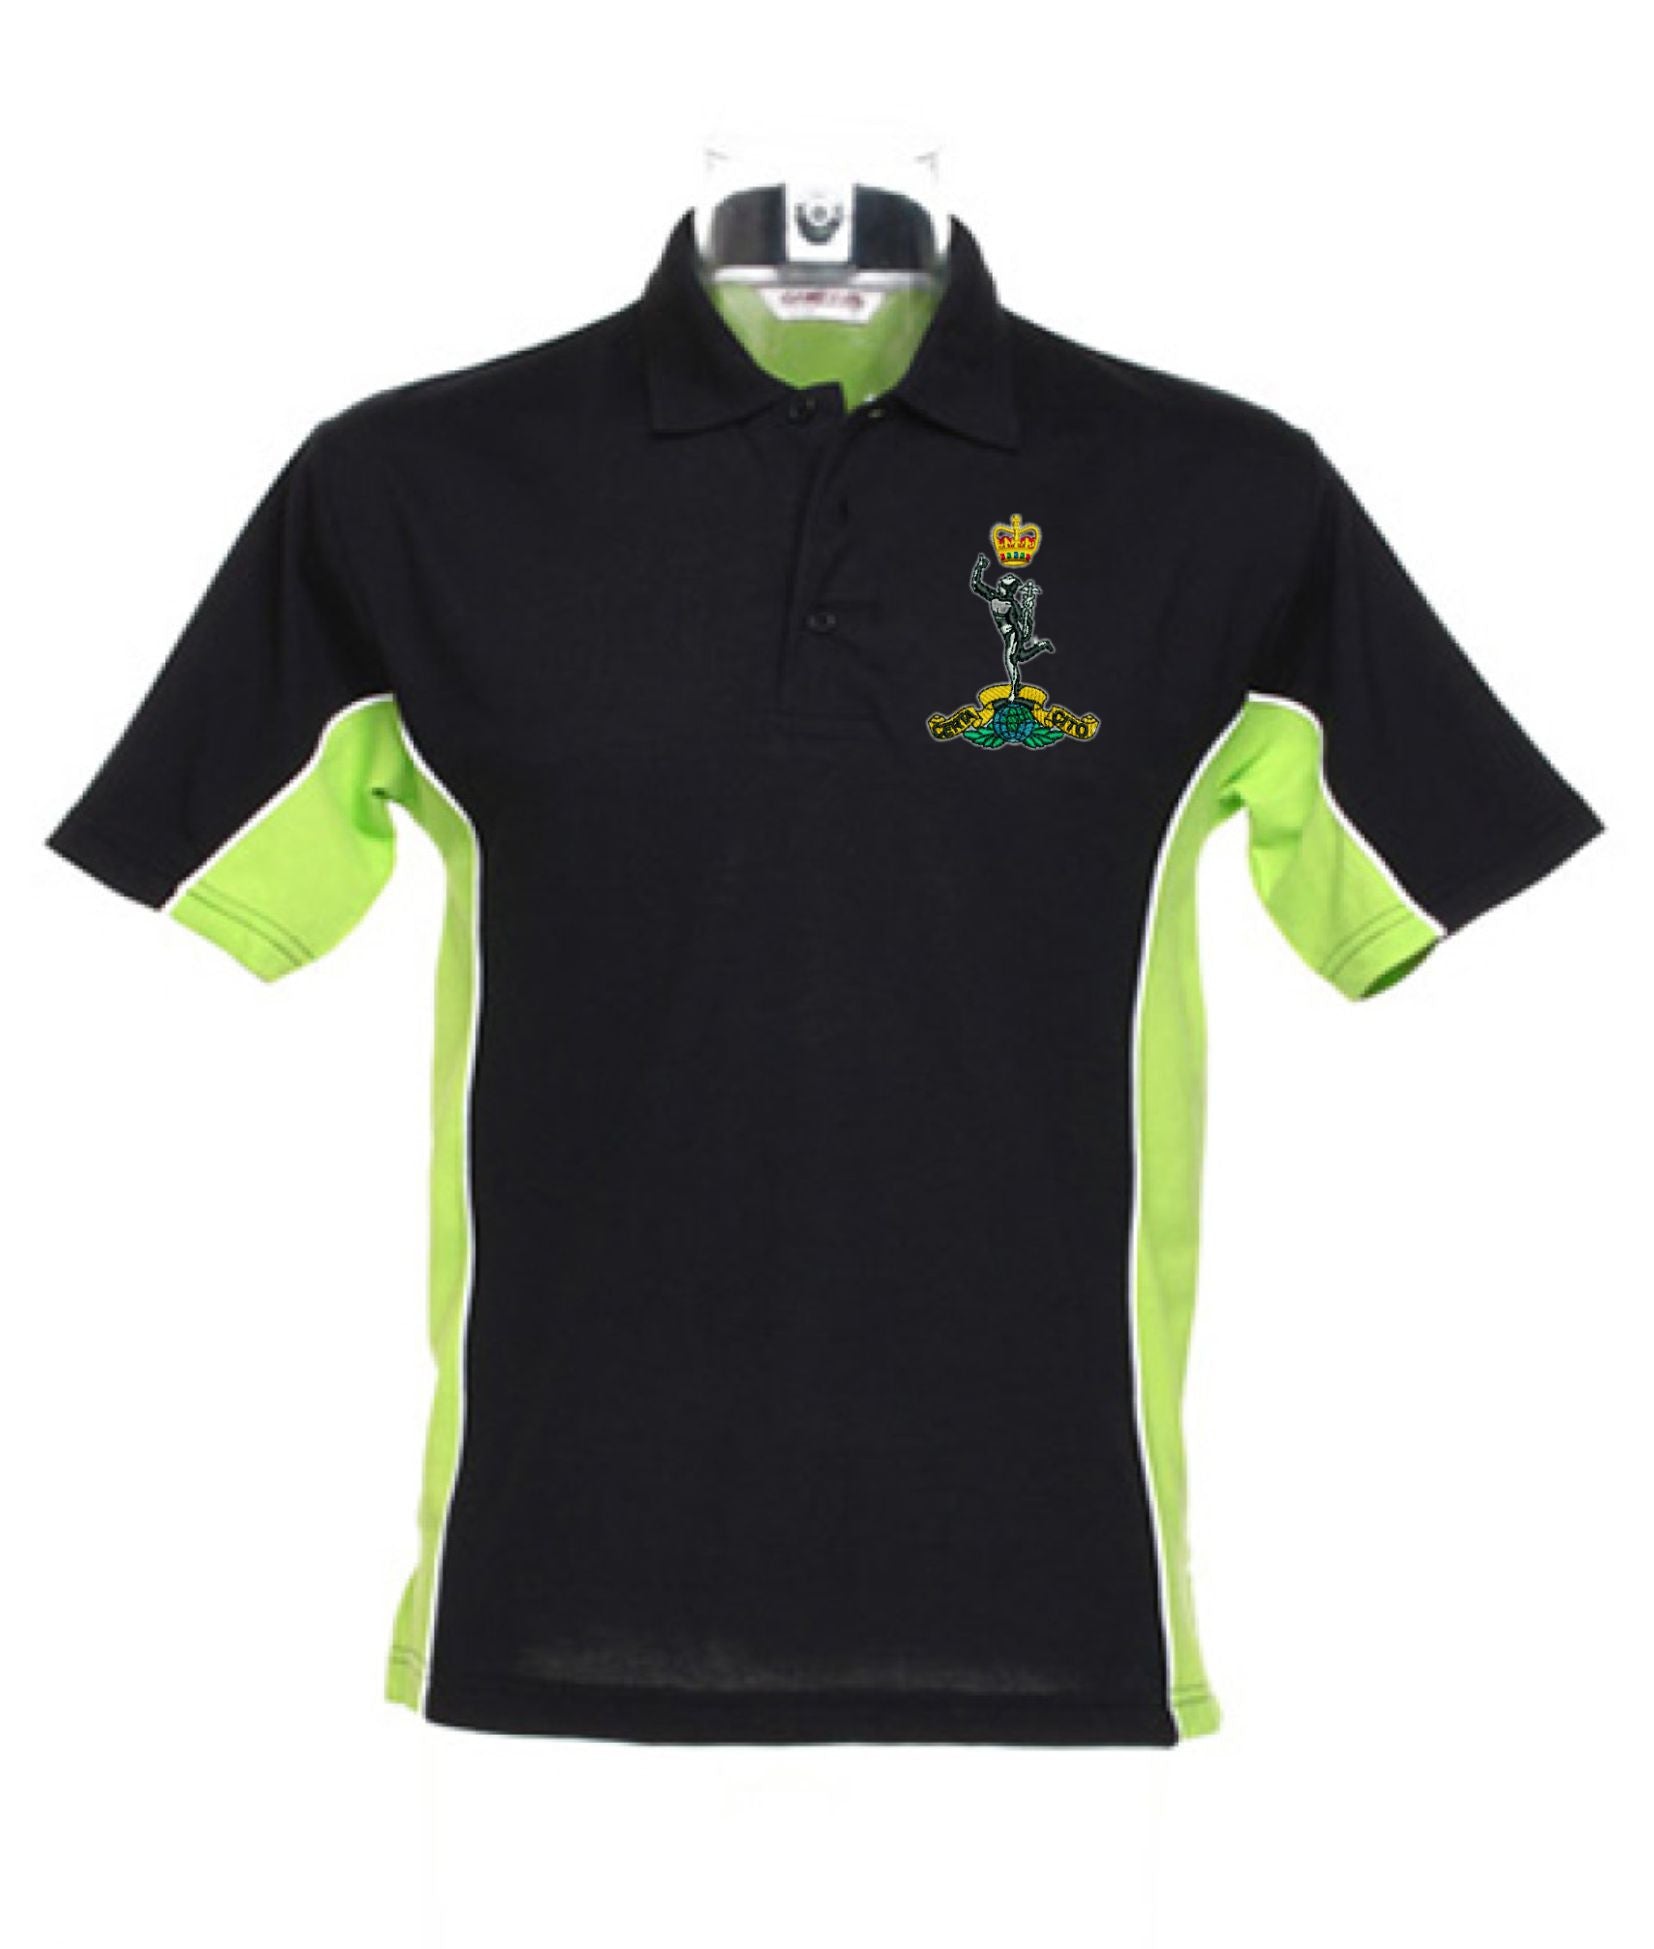 Royal Signals sports Polo Shirts